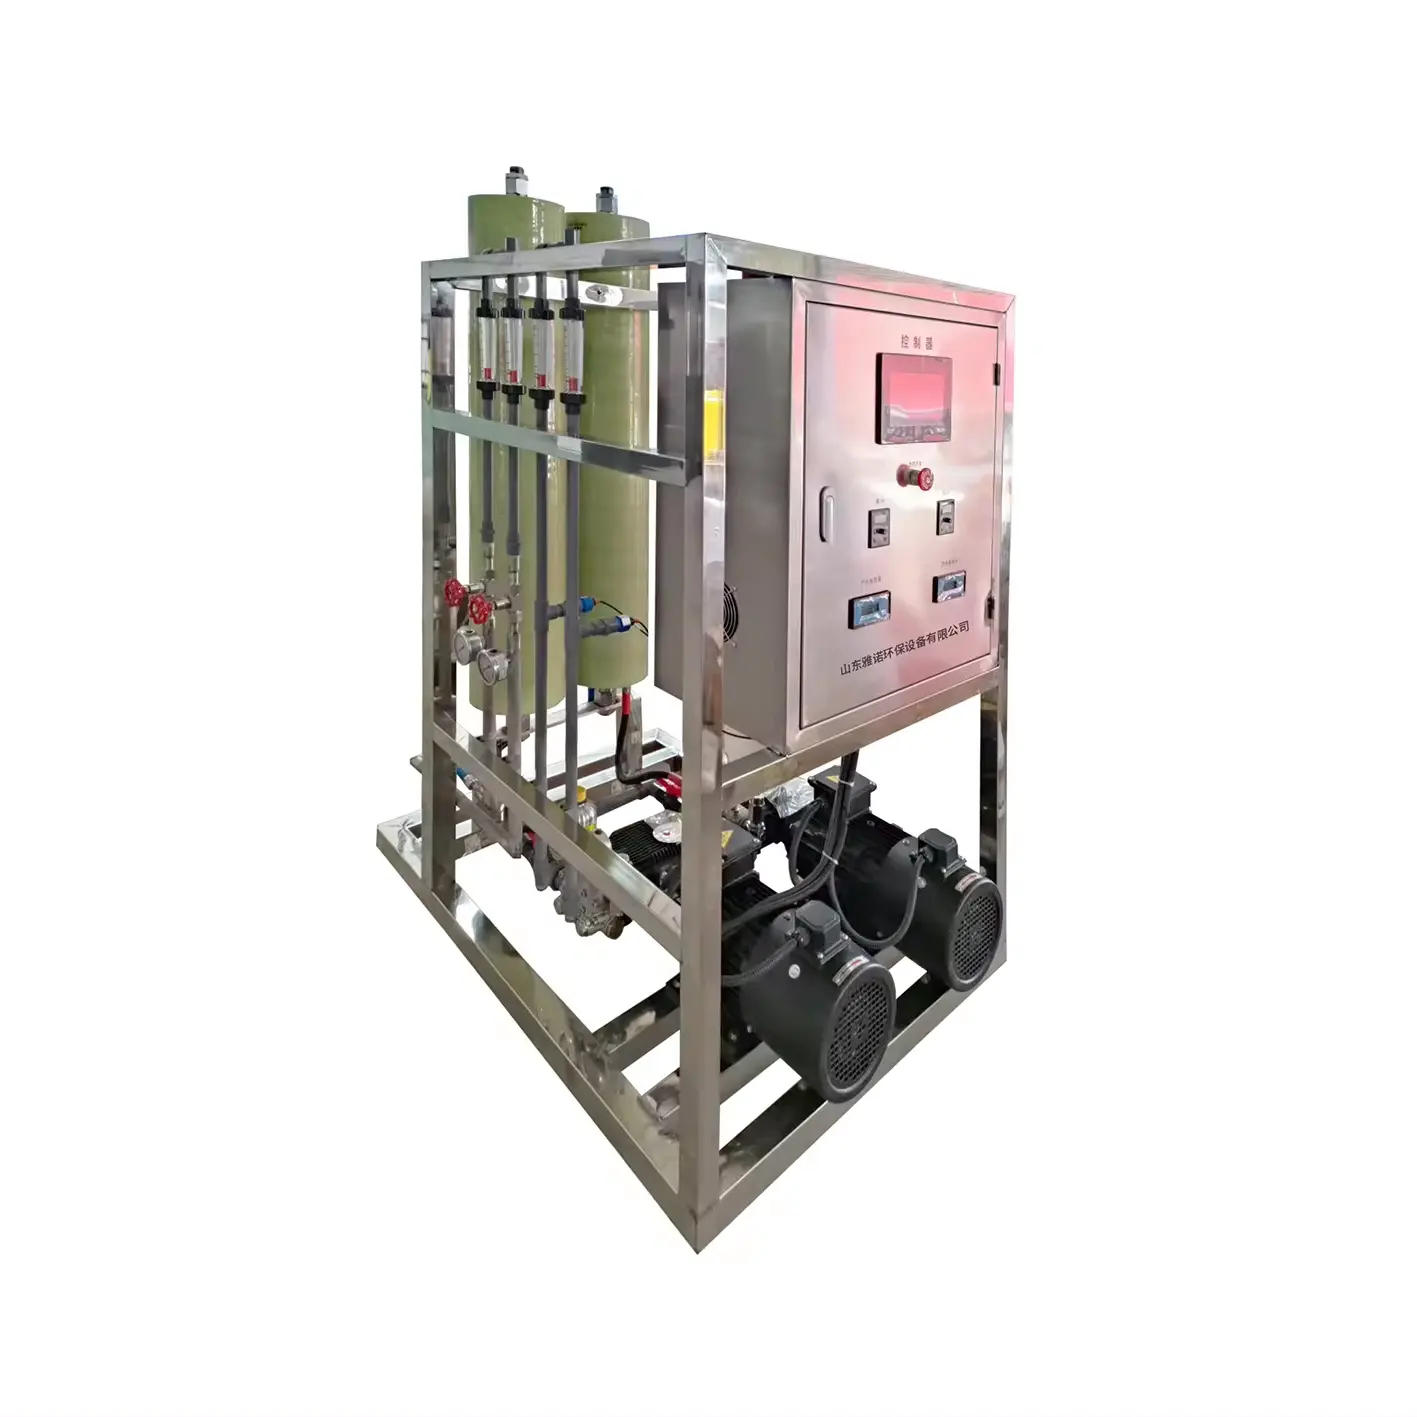 Sistema de dessalinização de água do mar RO Equipamento de dessalinização de água sistema de filtro de água Ro de 5 estágios Máquina de planta de tratamento de água Ro